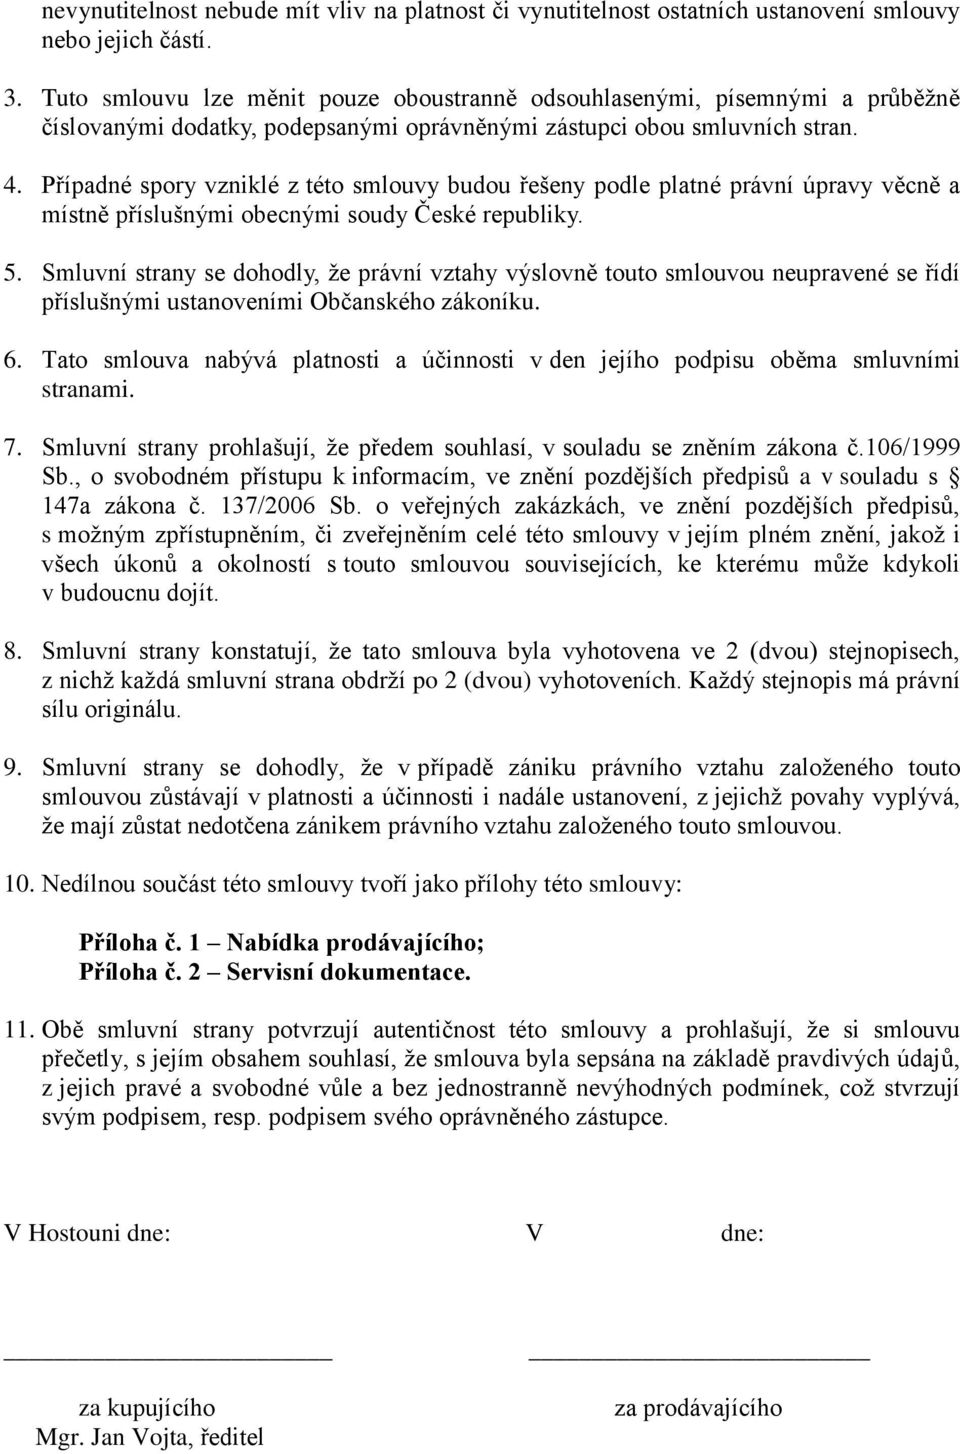 Případné spory vzniklé z této smlouvy budou řešeny podle platné právní úpravy věcně a místně příslušnými obecnými soudy České republiky. 5.